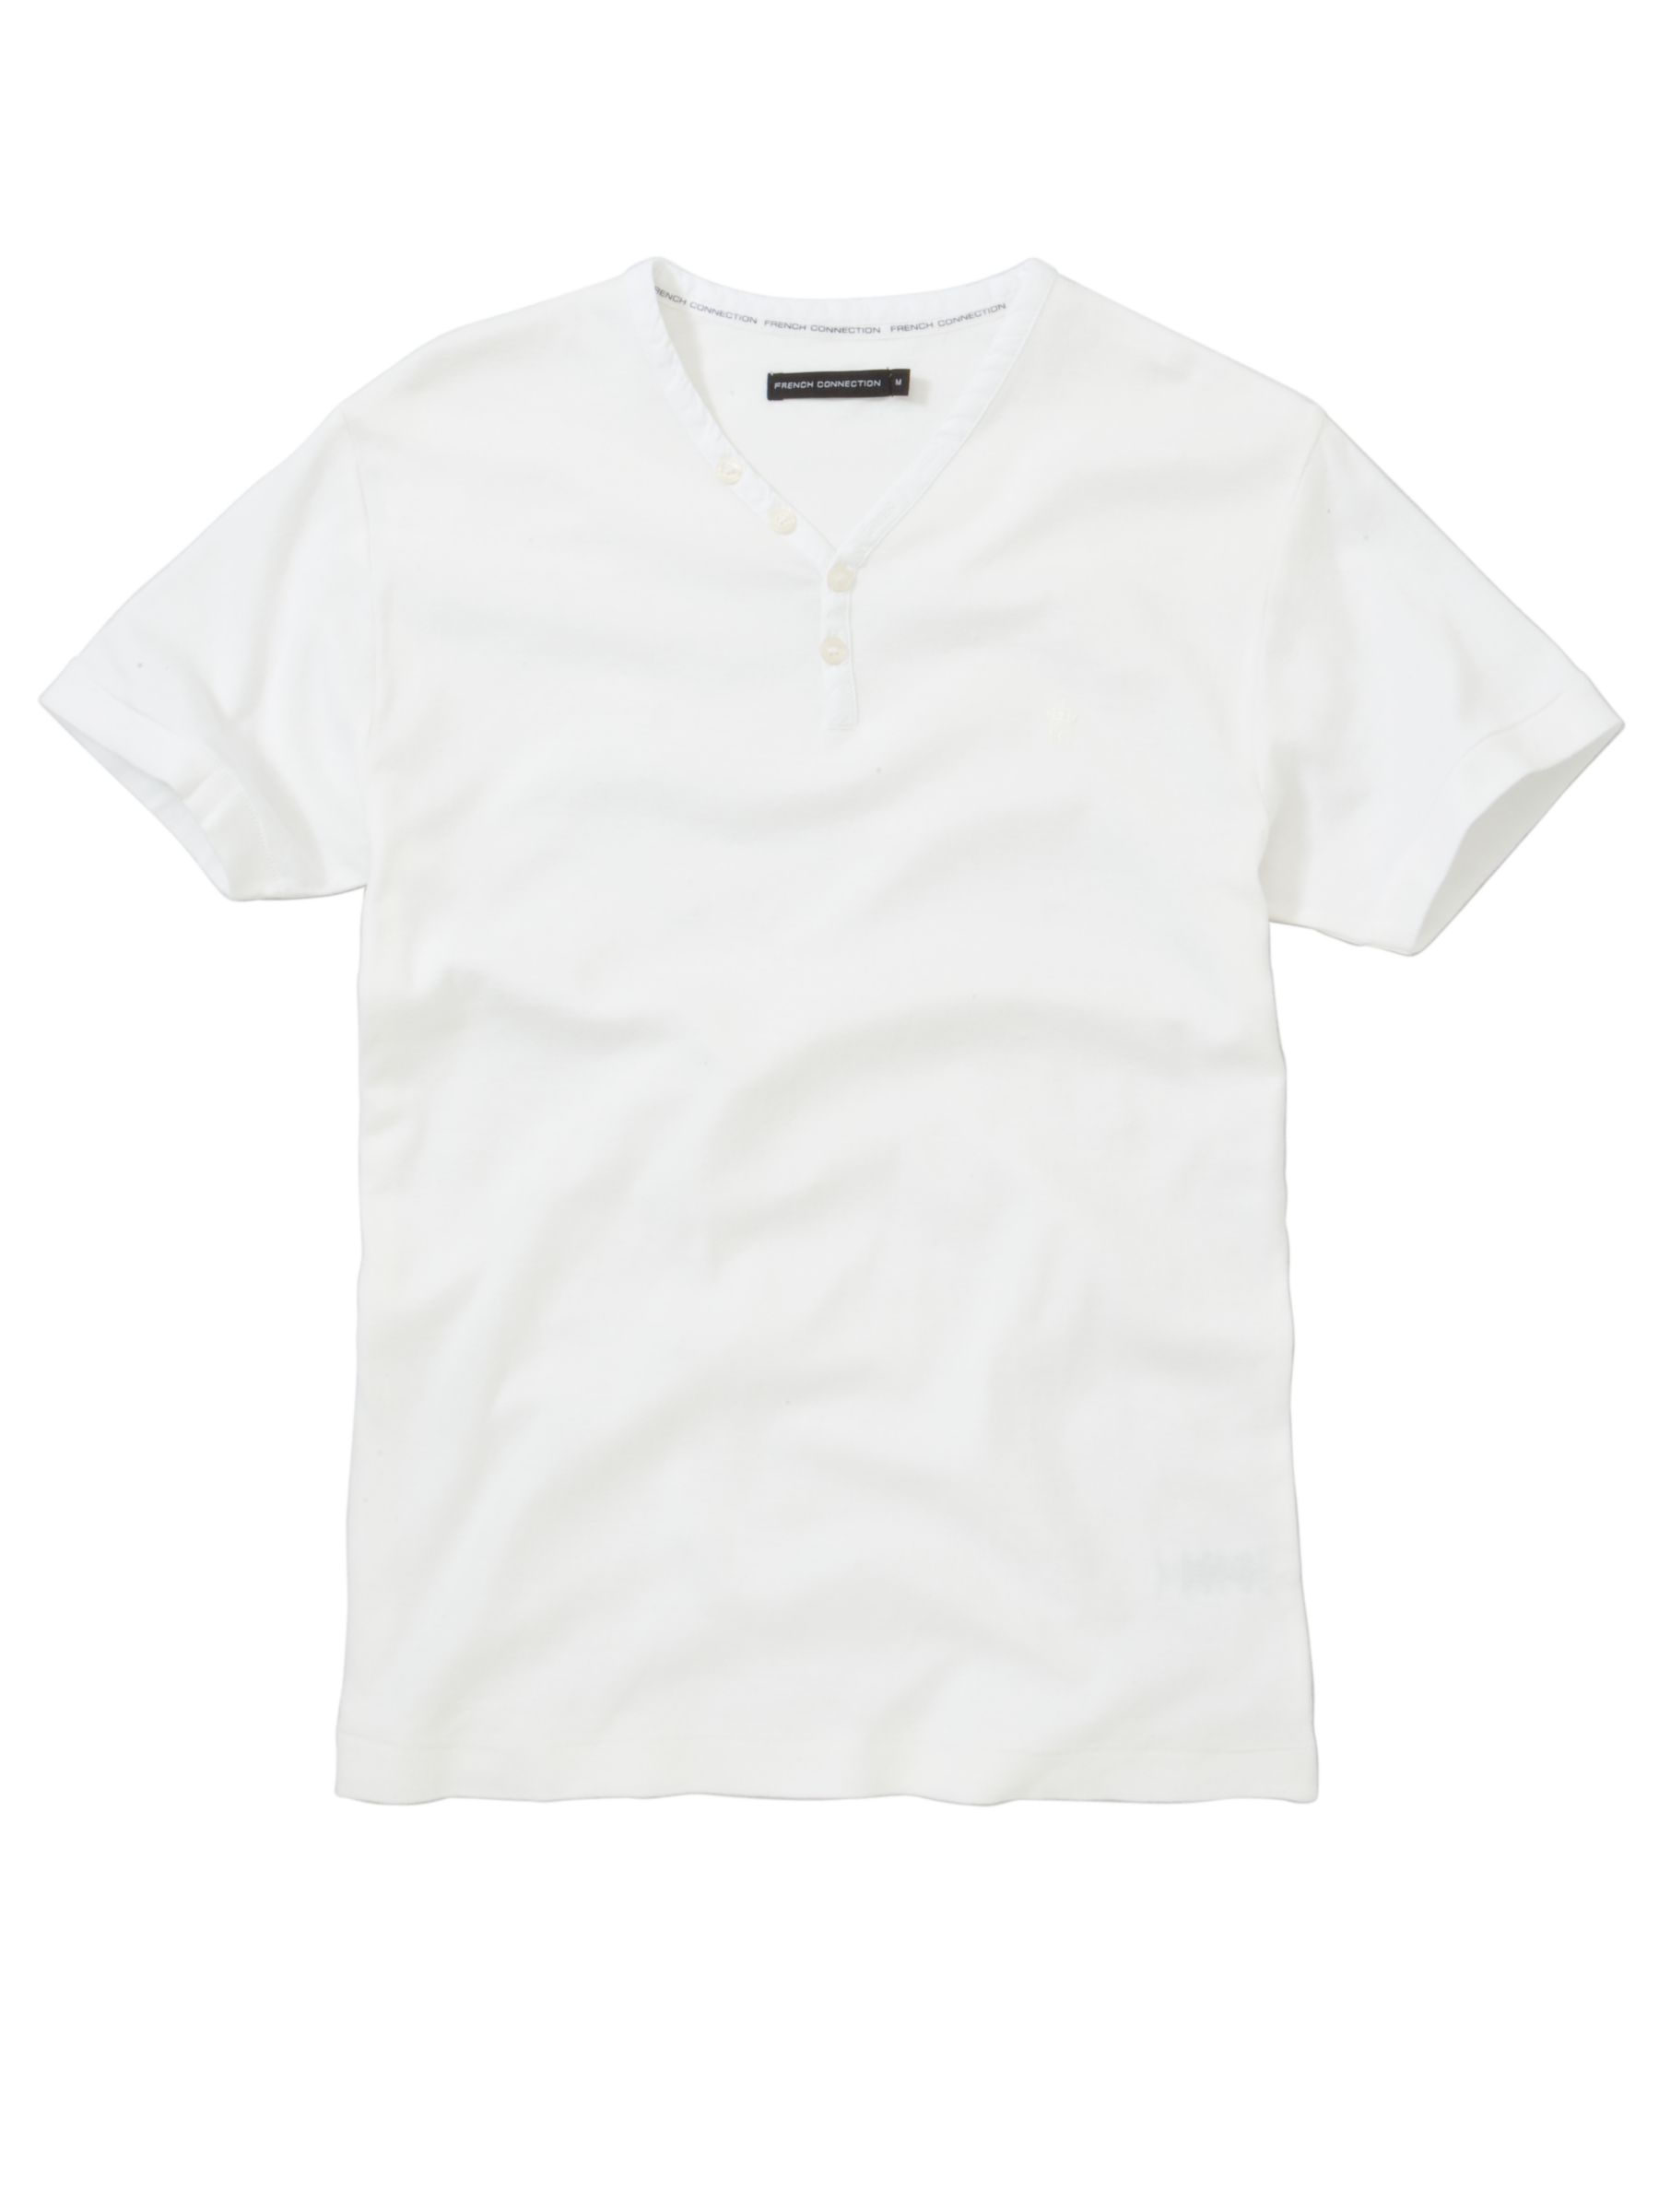 Grandad T-Shirt, White